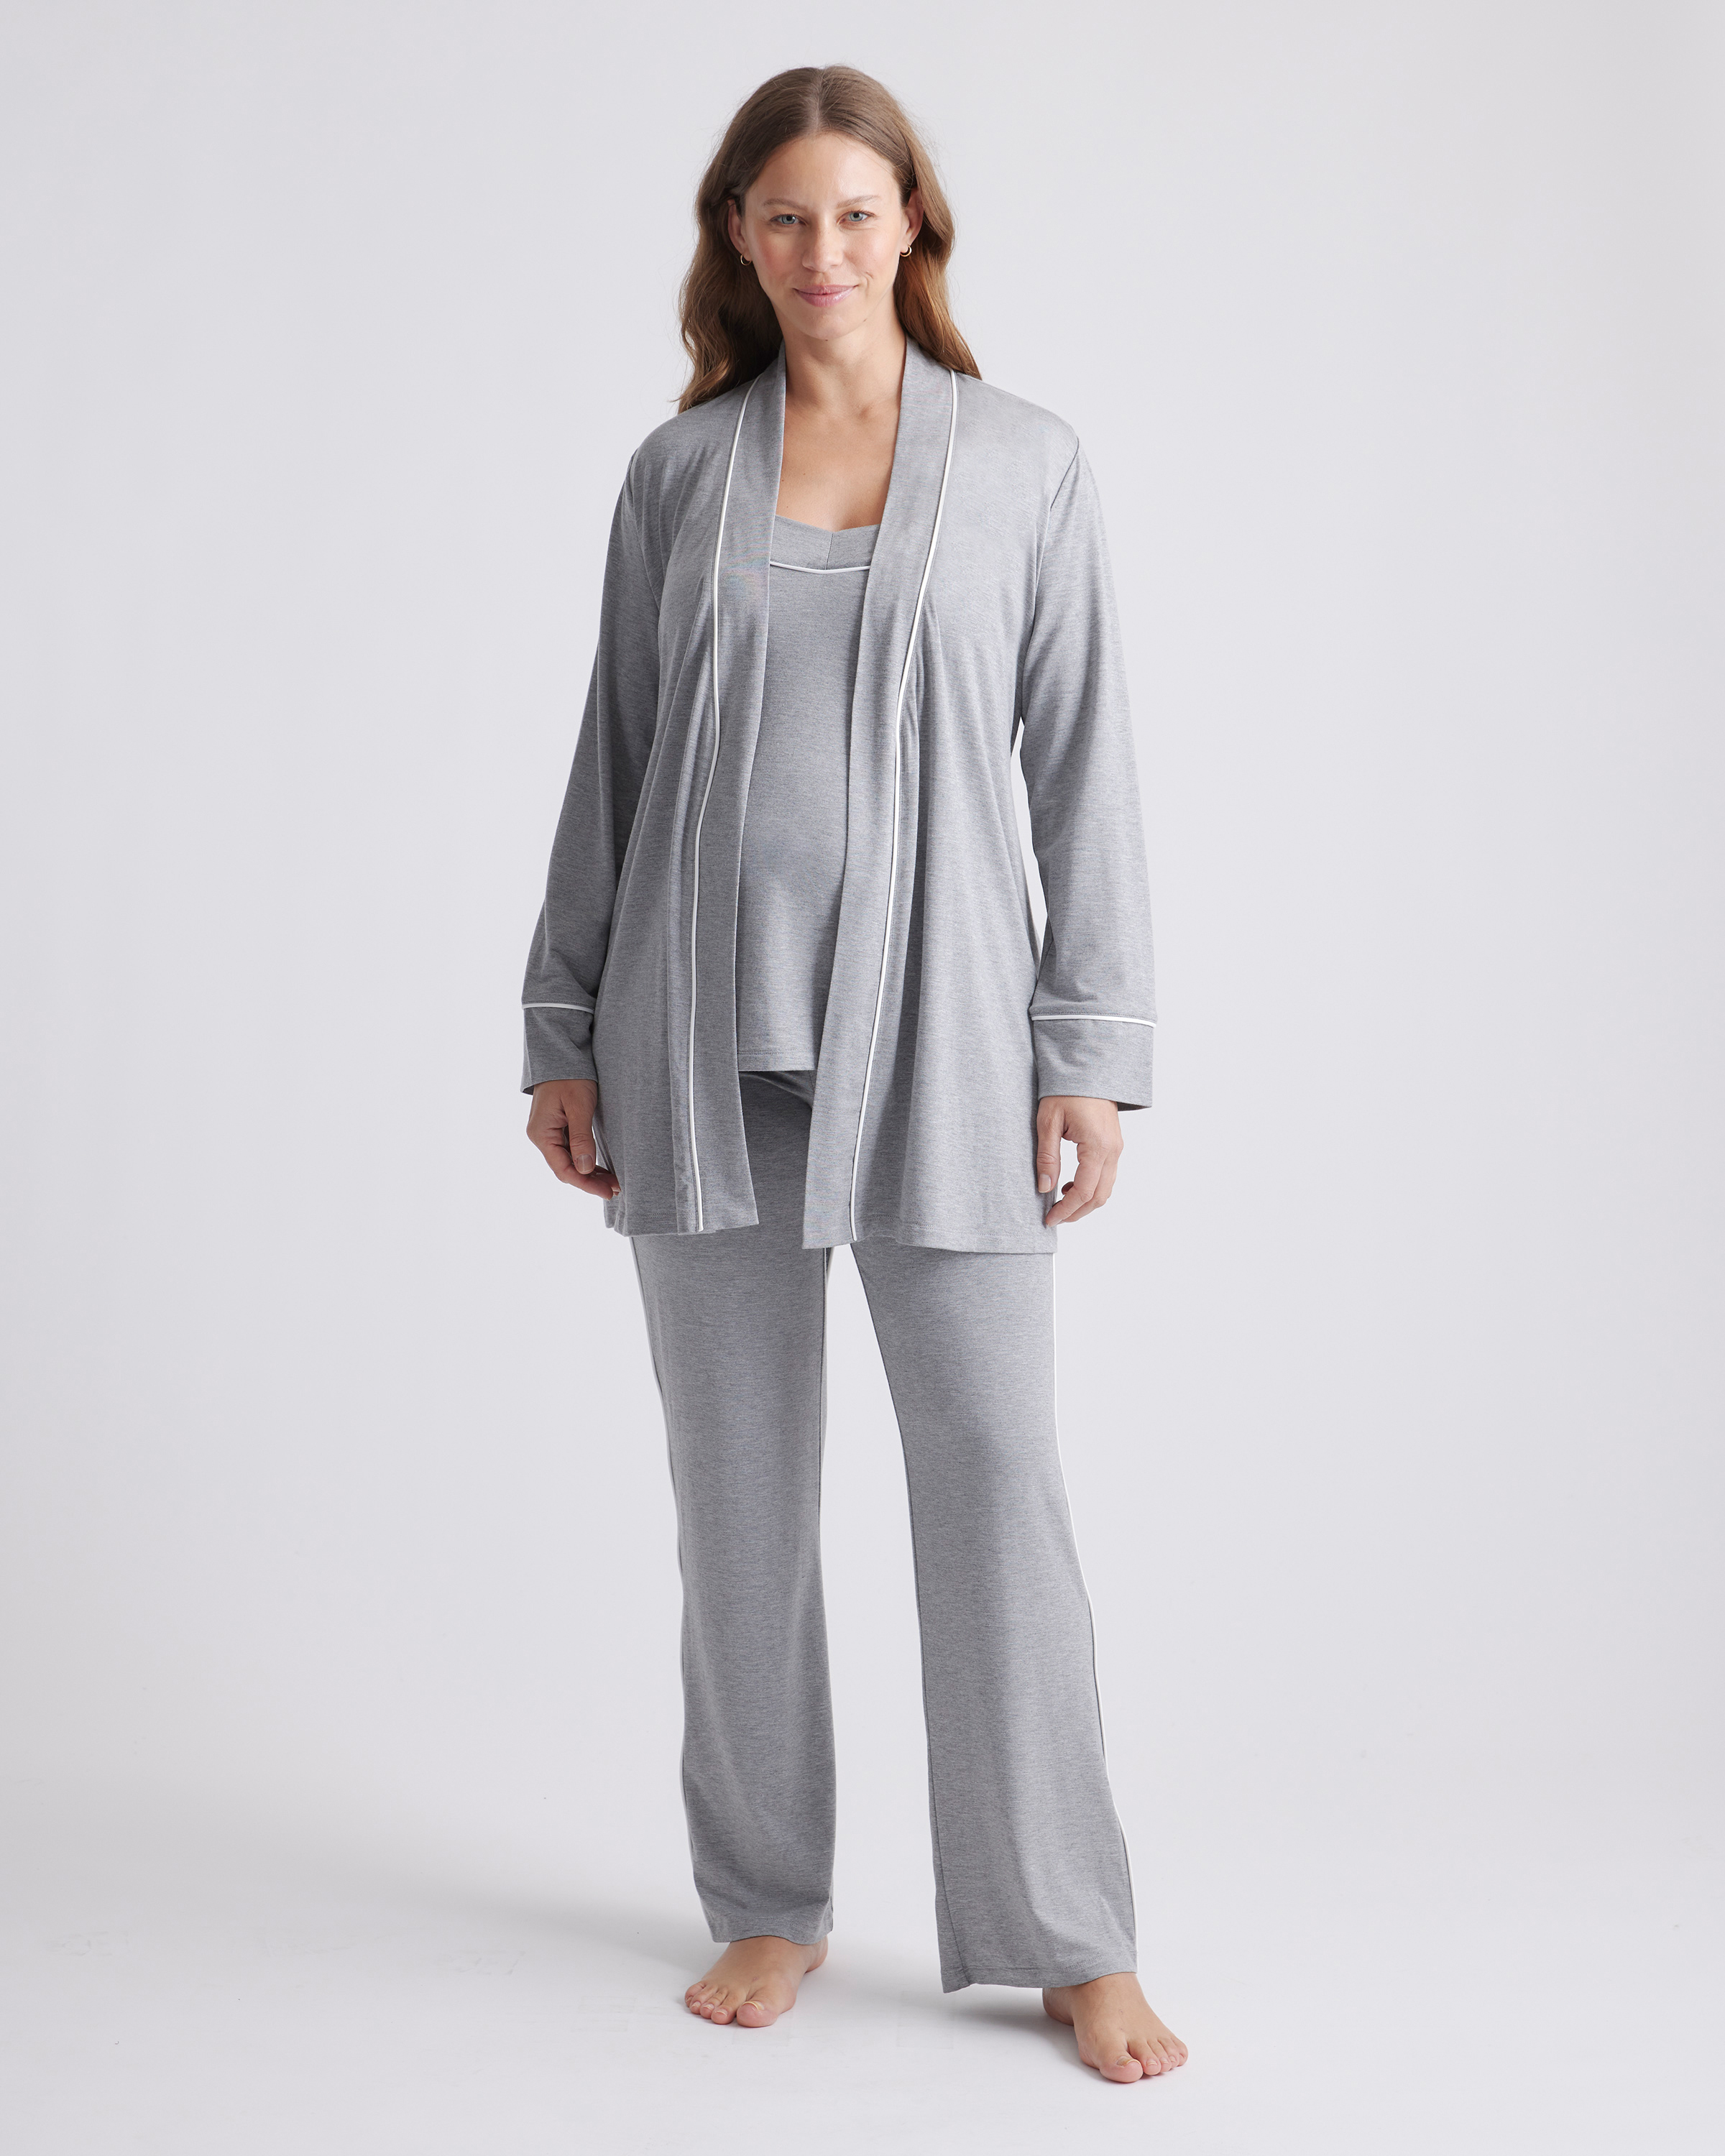 Kindred Bravely Davy Nursing & Maternity Pajama Set – Healthy